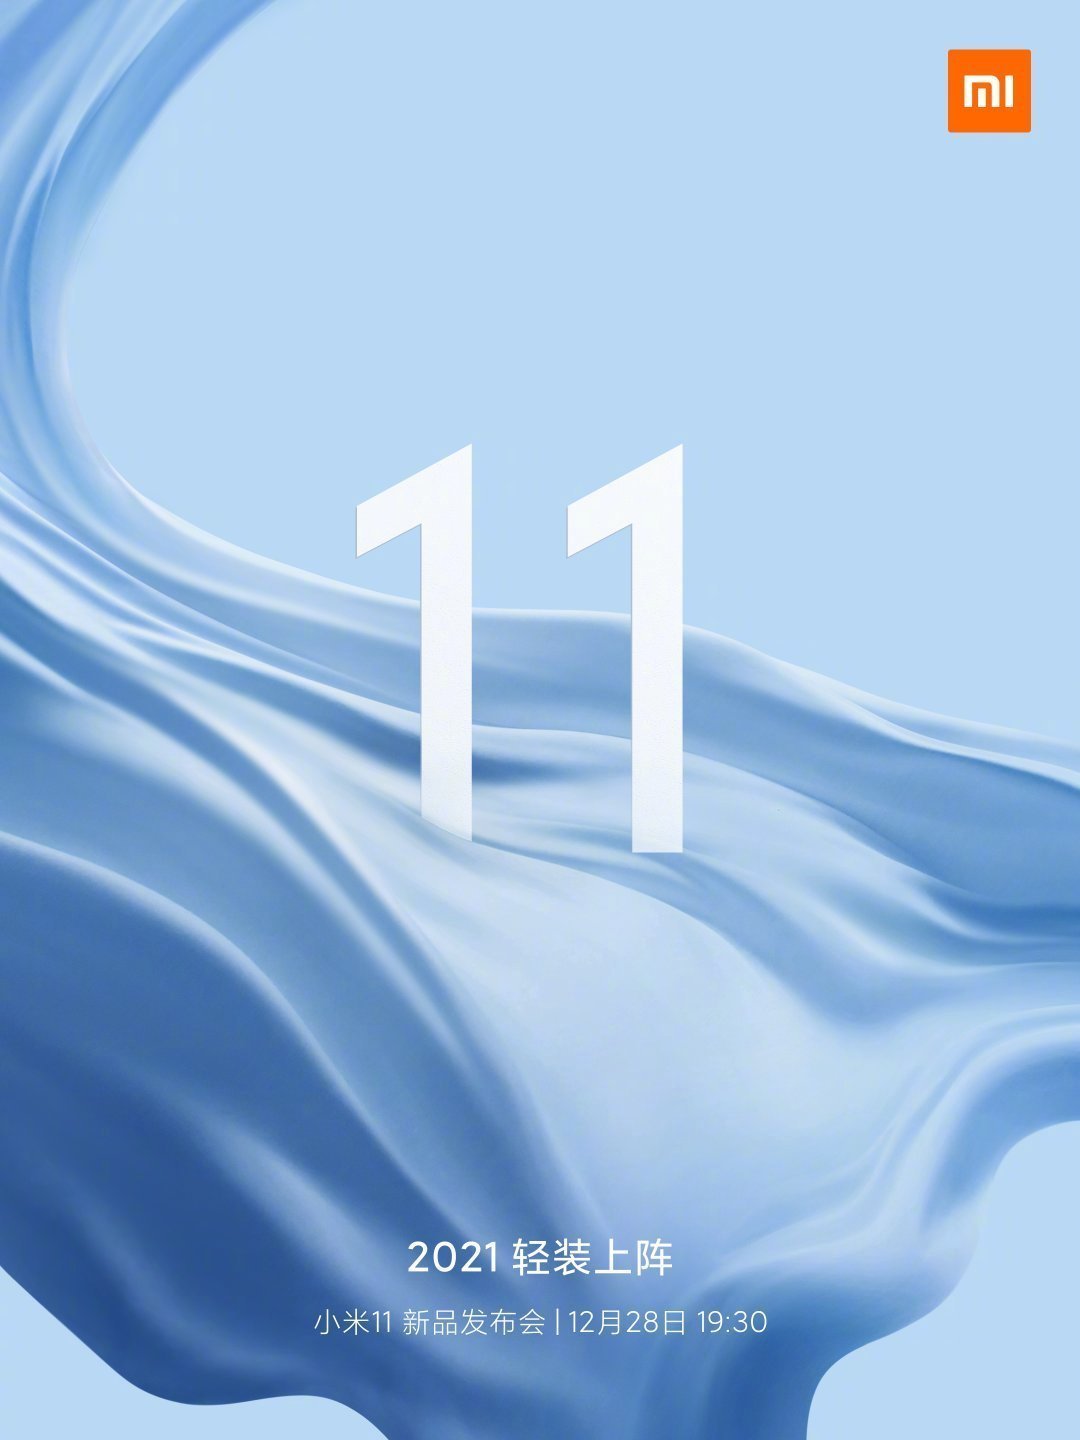 Lanzamiento de Xiaomi Mi 11 confirmado el 28 de diciembre